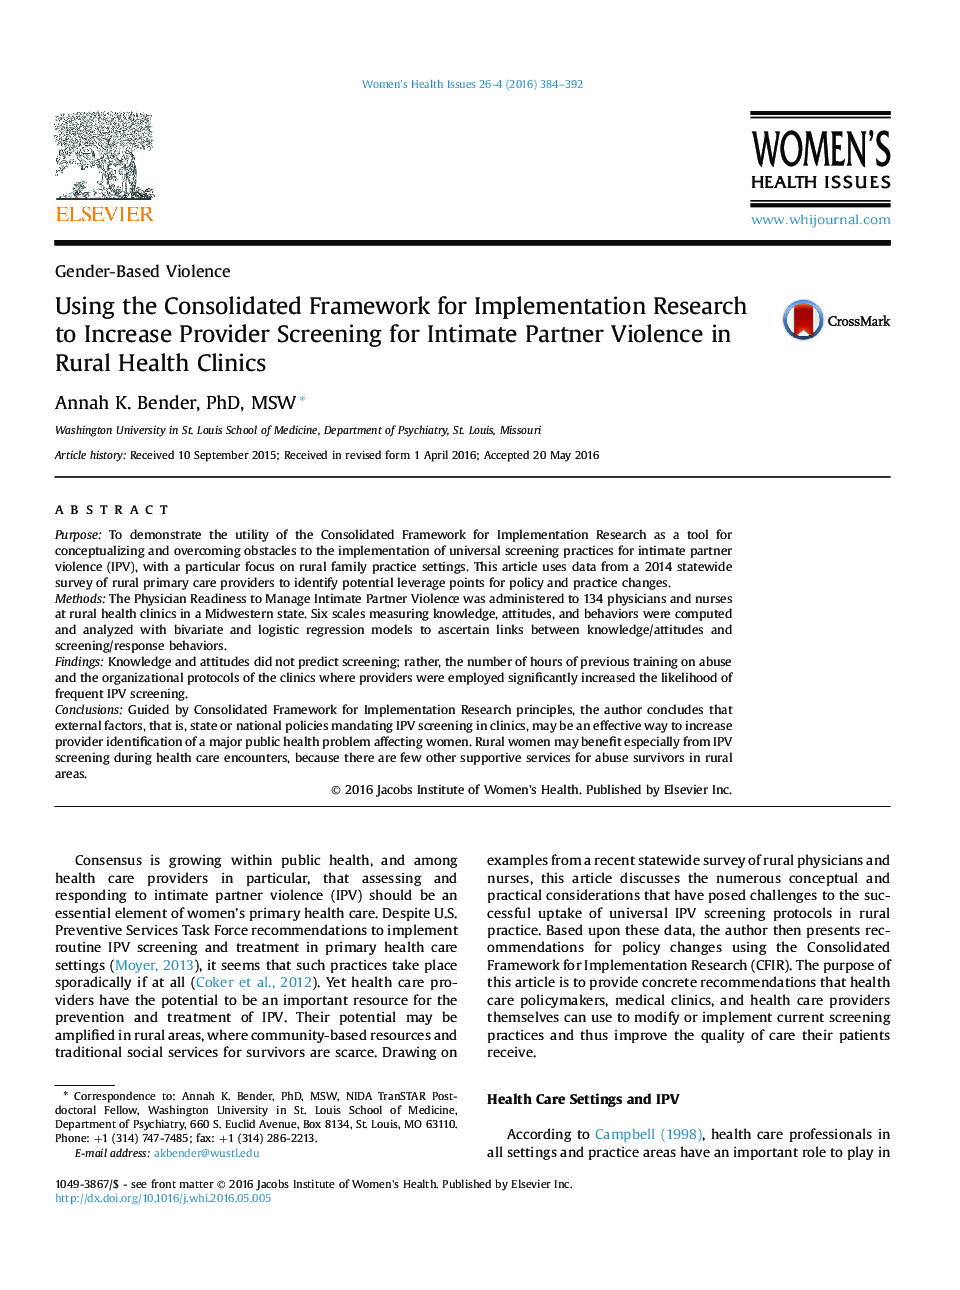 استفاده از چارچوب تلفیقی برای اجرای تحقیقات برای افزایش غربالگری ارائه دهنده برای خشونت شریک صمیمی در درمانگاه های بهداشتی روستایی 